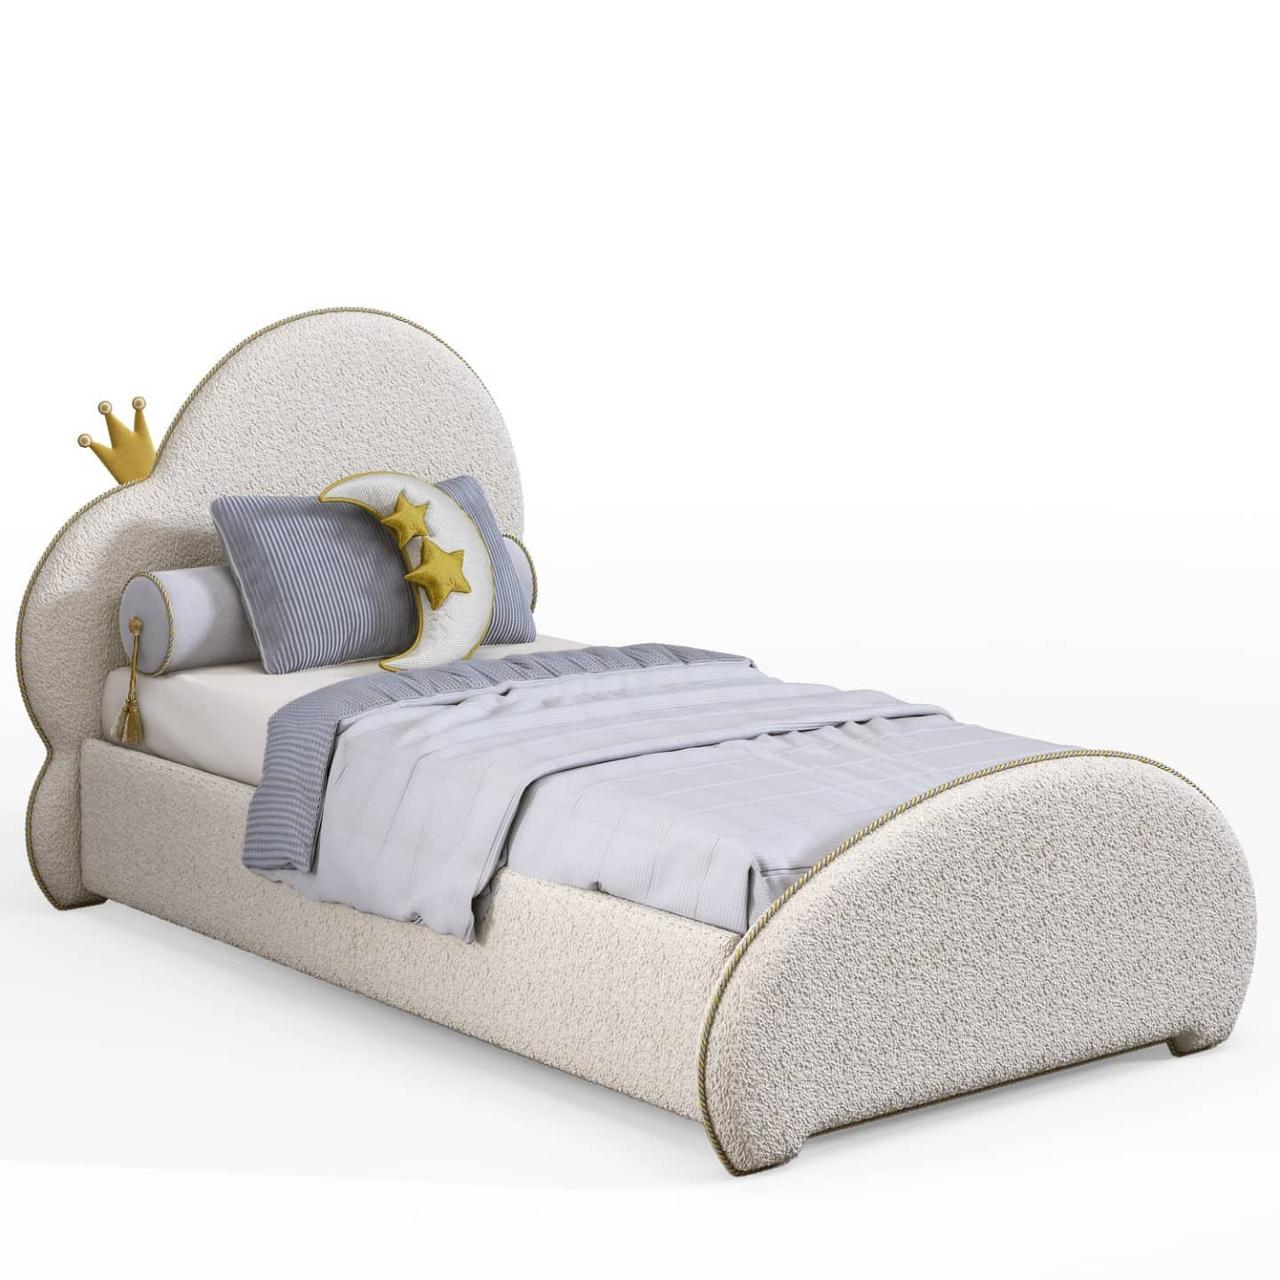 М'яке ліжко для дітей та підлітків MeBelle SKAYA 80х190 см односпальне м'яке, молочно-біле